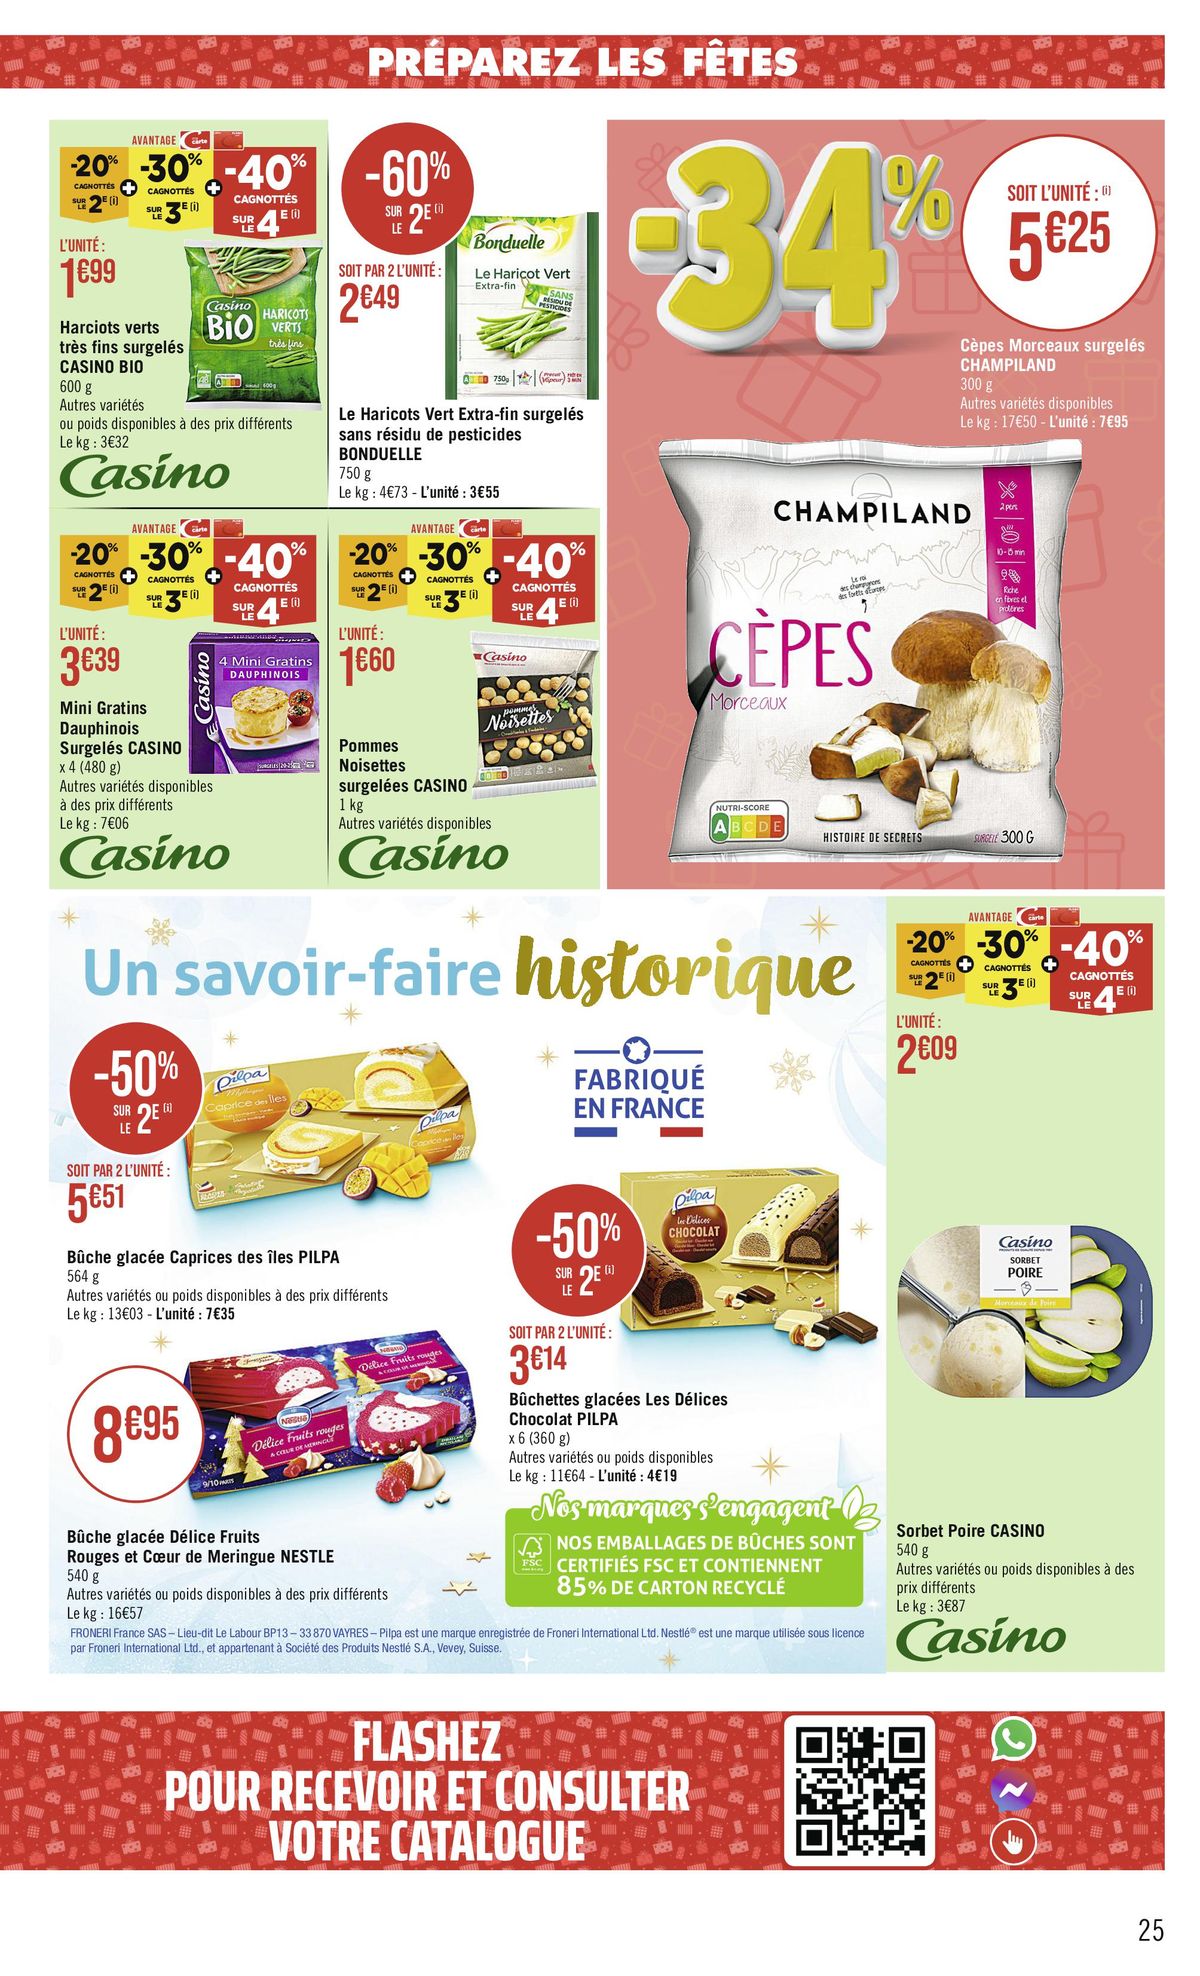 Catalogue -68 % CAGNOTTÉS SUR LE 2€, page 00025